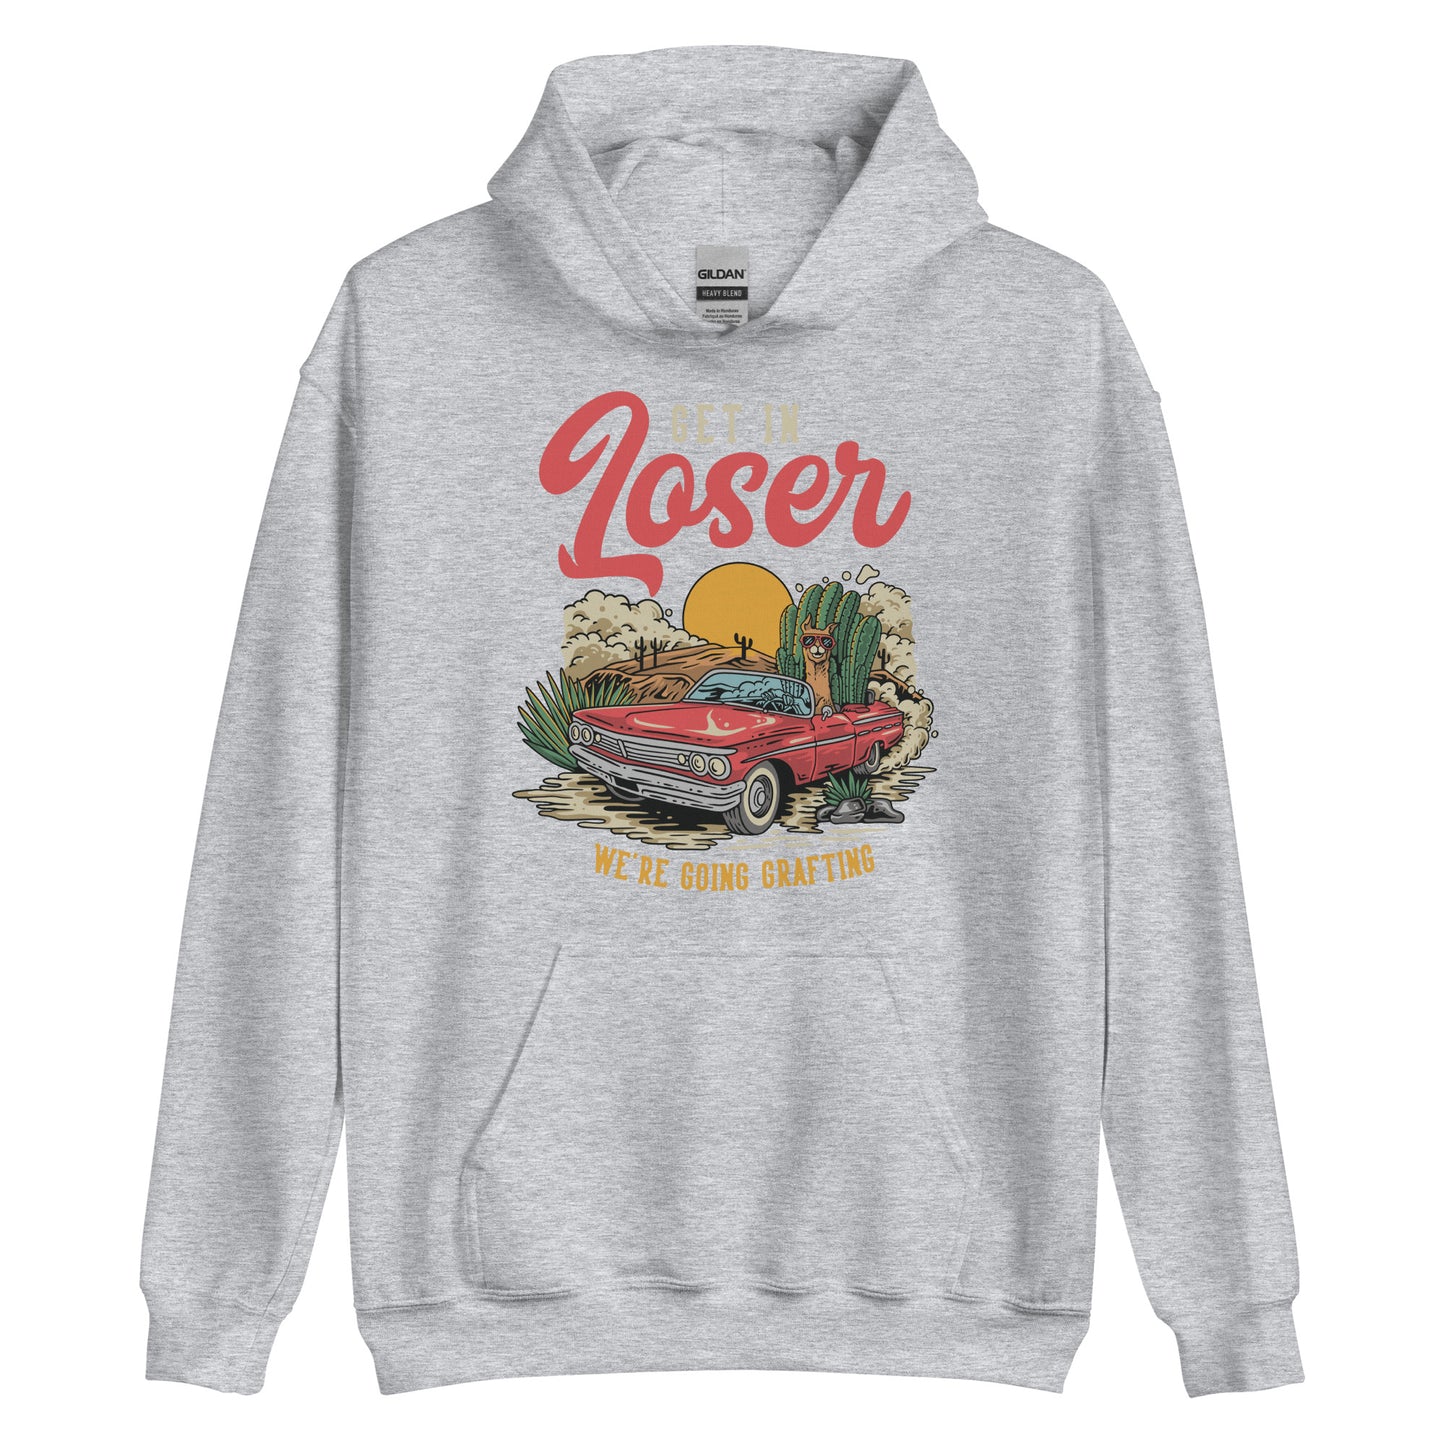 Get in Loser unisex hoodie